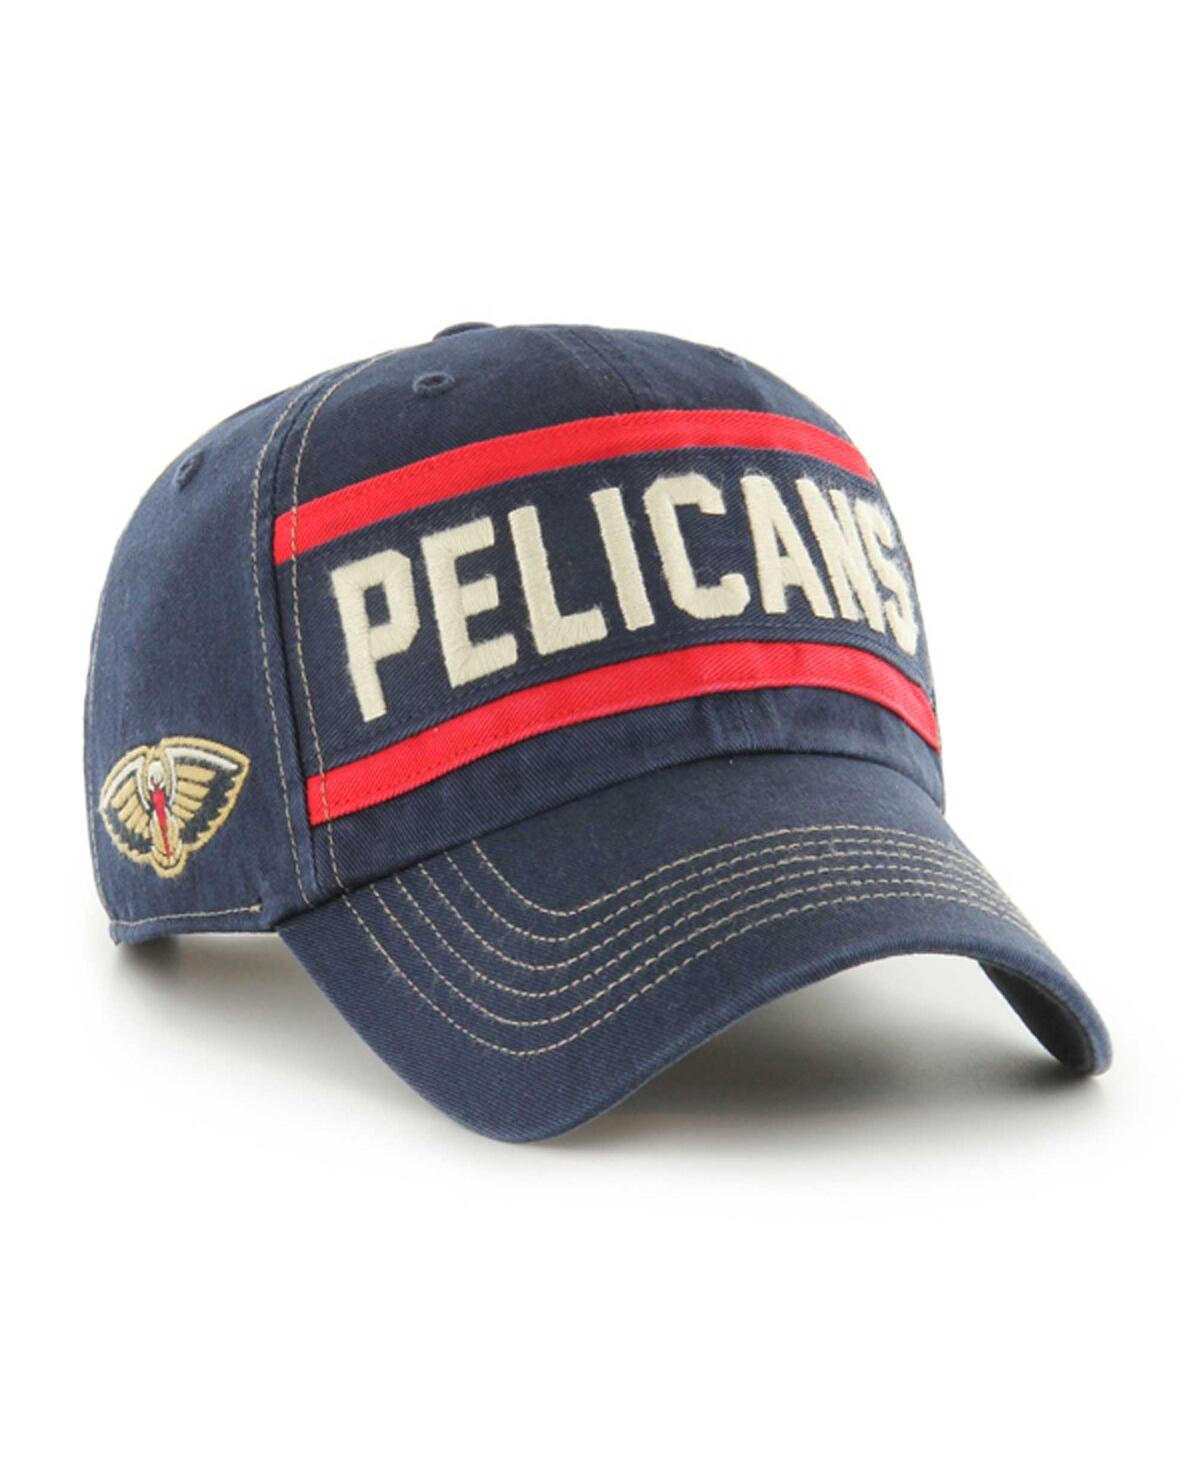 47 Men's Navy New Orleans Pelicans Quick Snap Clean Up Adjustable Hat - Navy